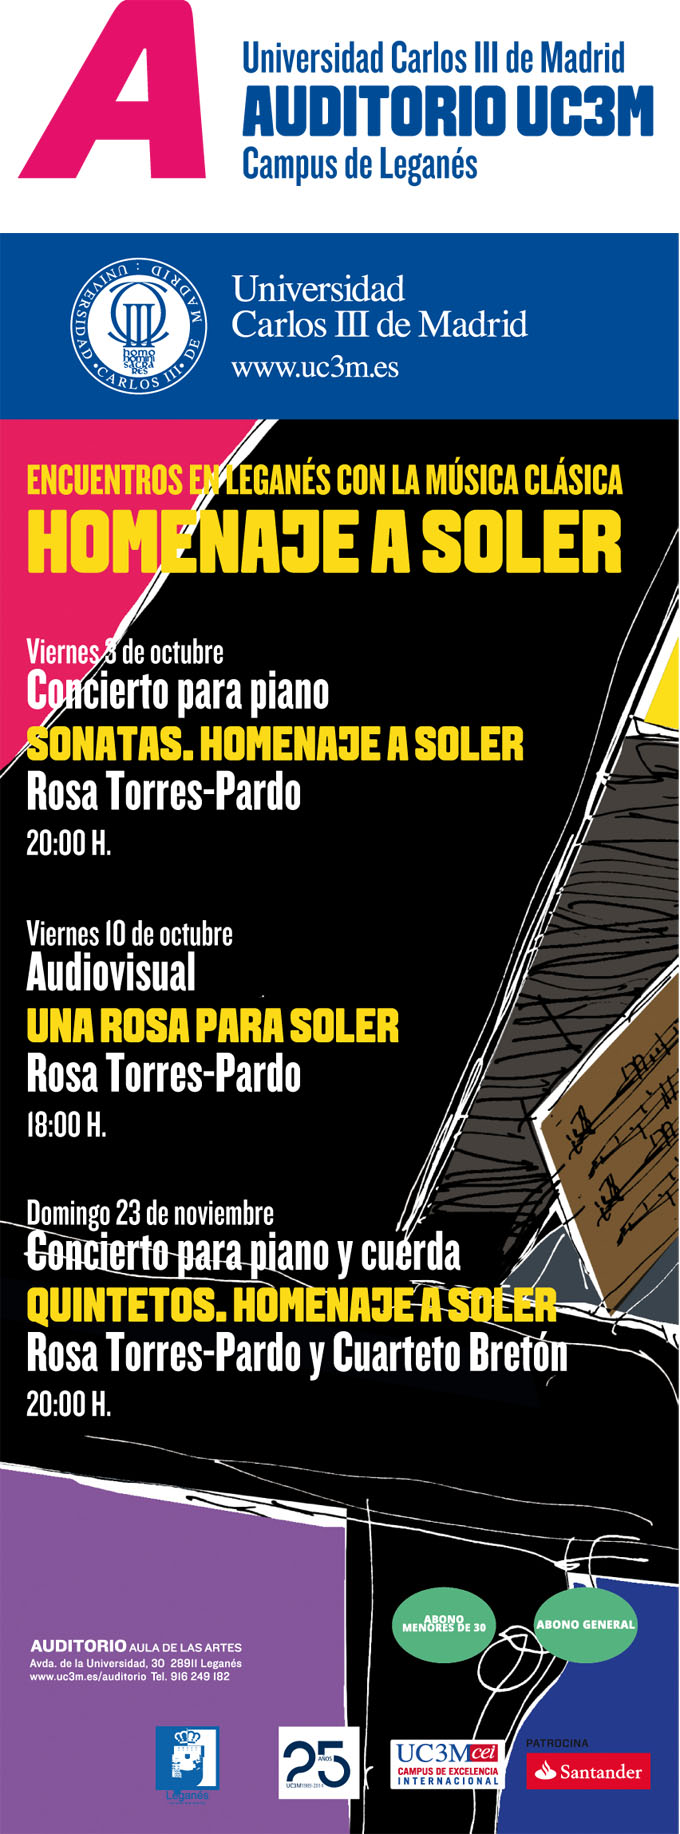 universidad carlos iii de madrid  Homenaje a Soler con Rosa Torres Pardo